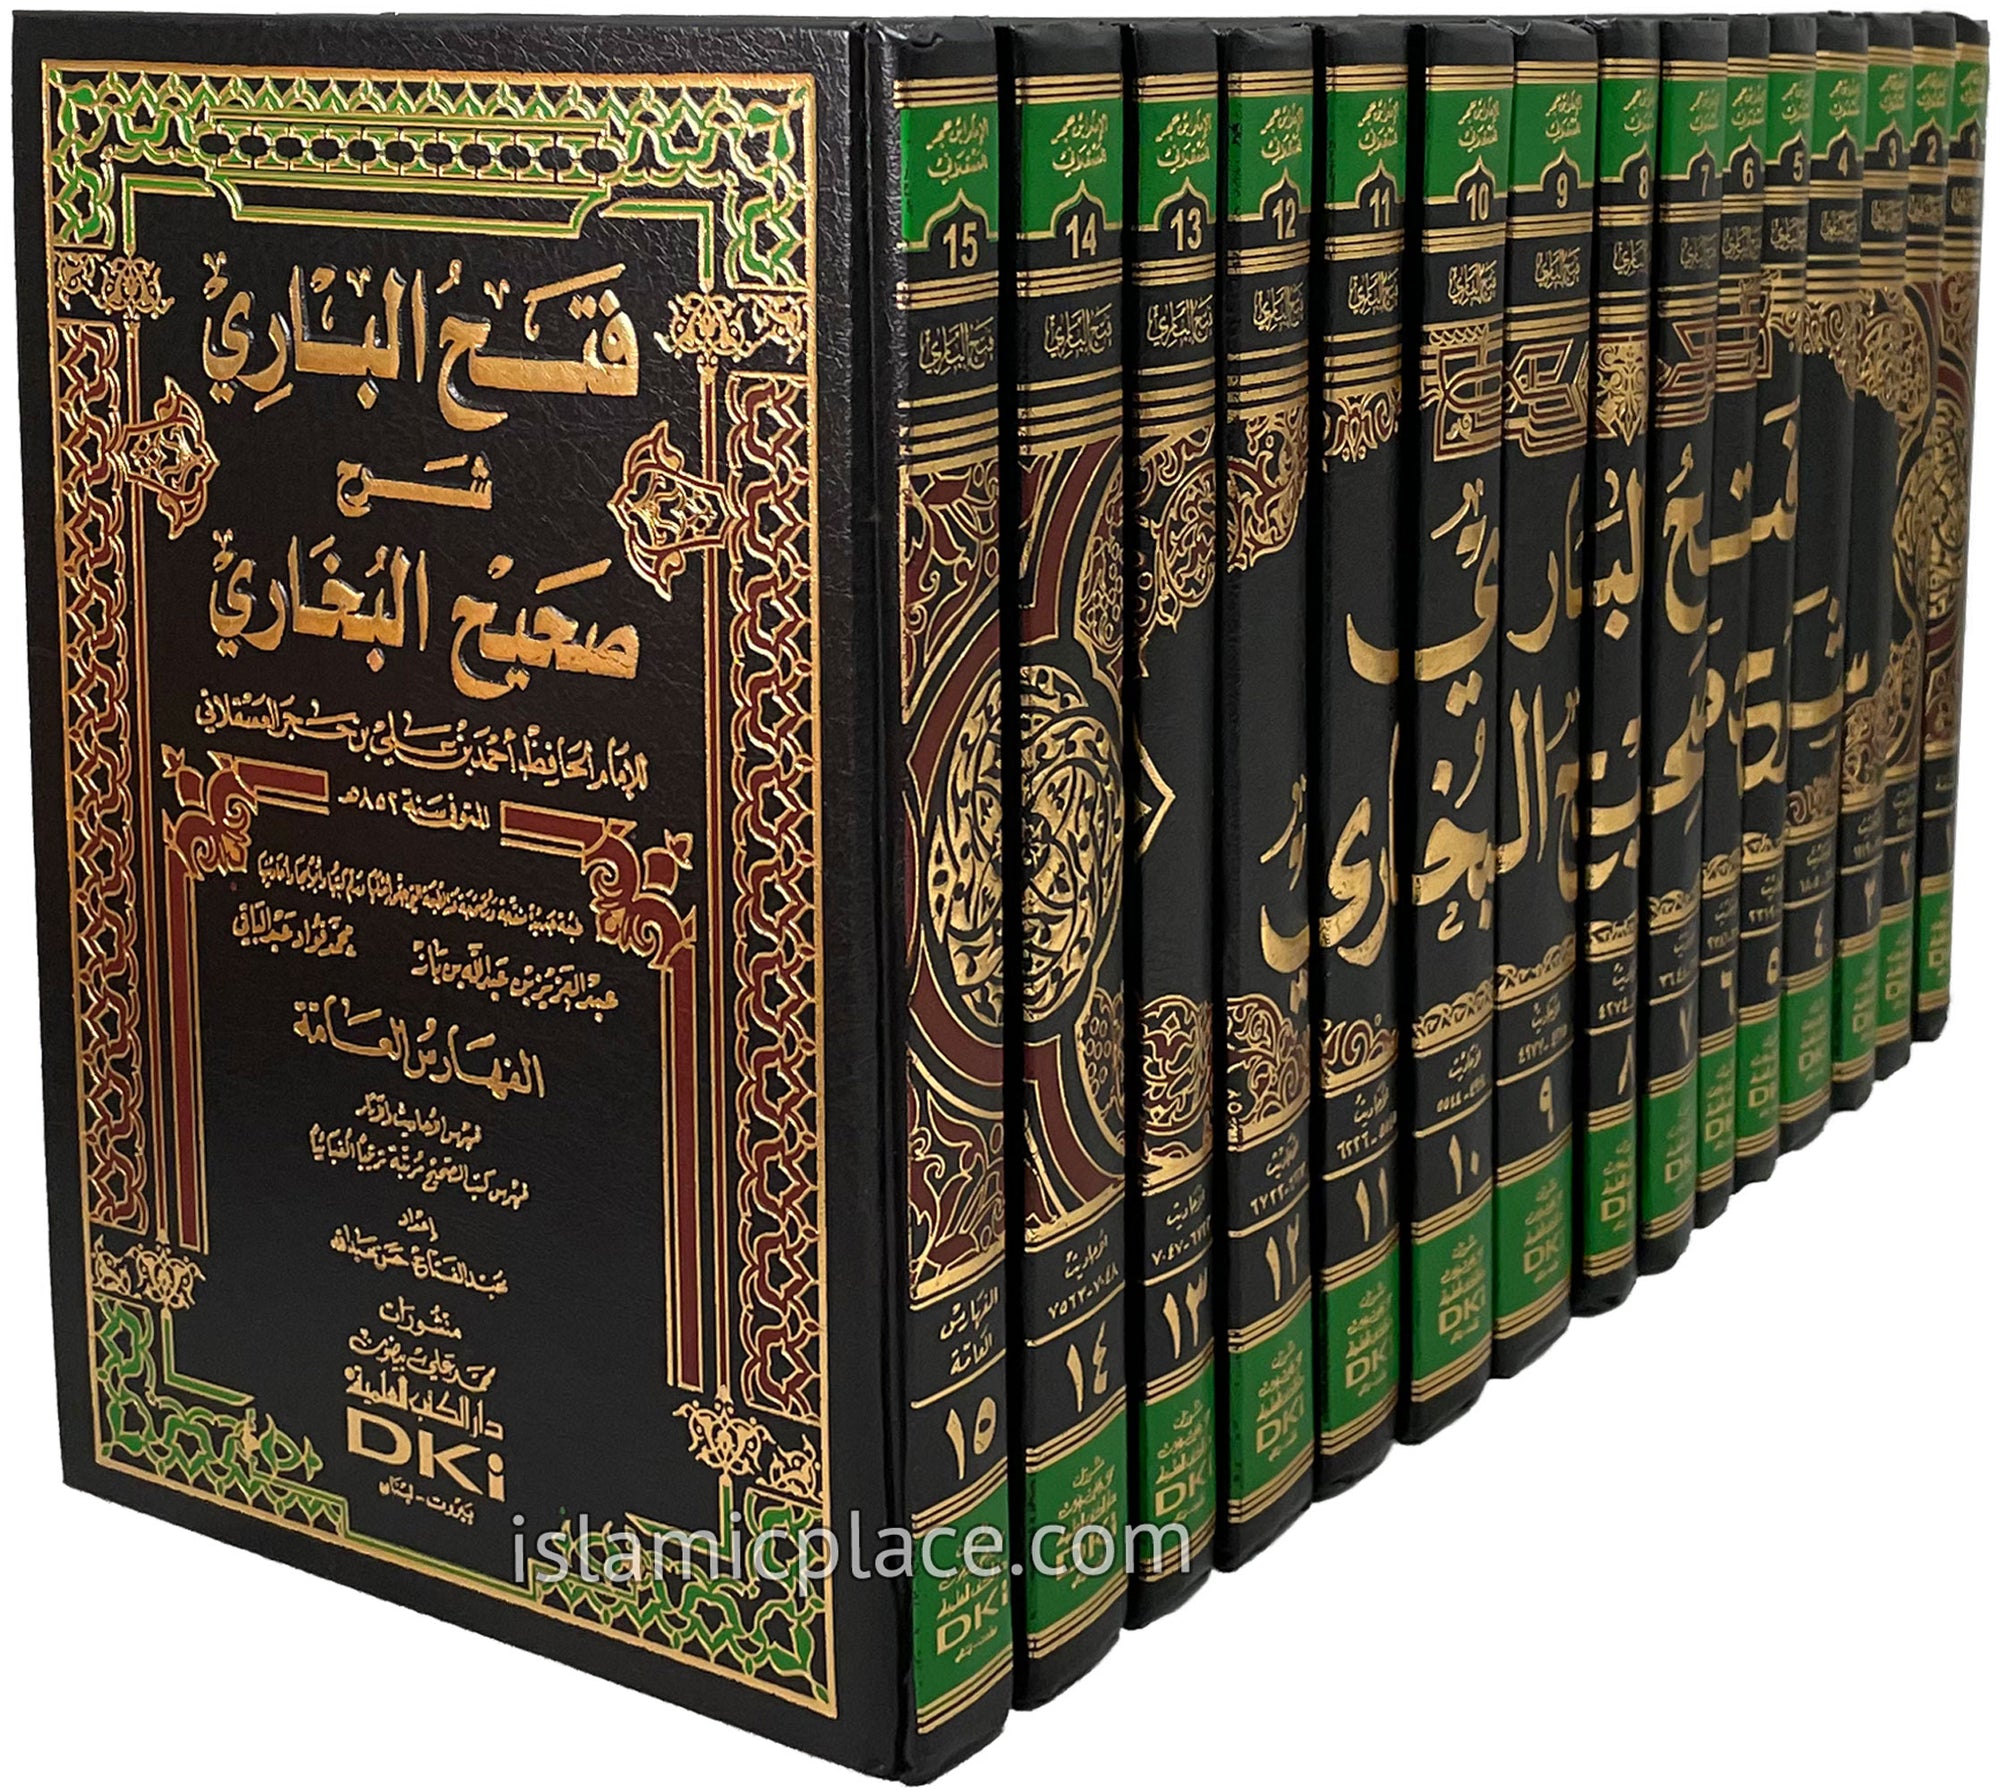 [15 vol set] Arabic: Fathul-Bari - Sharah Sahih Al-Bukhari